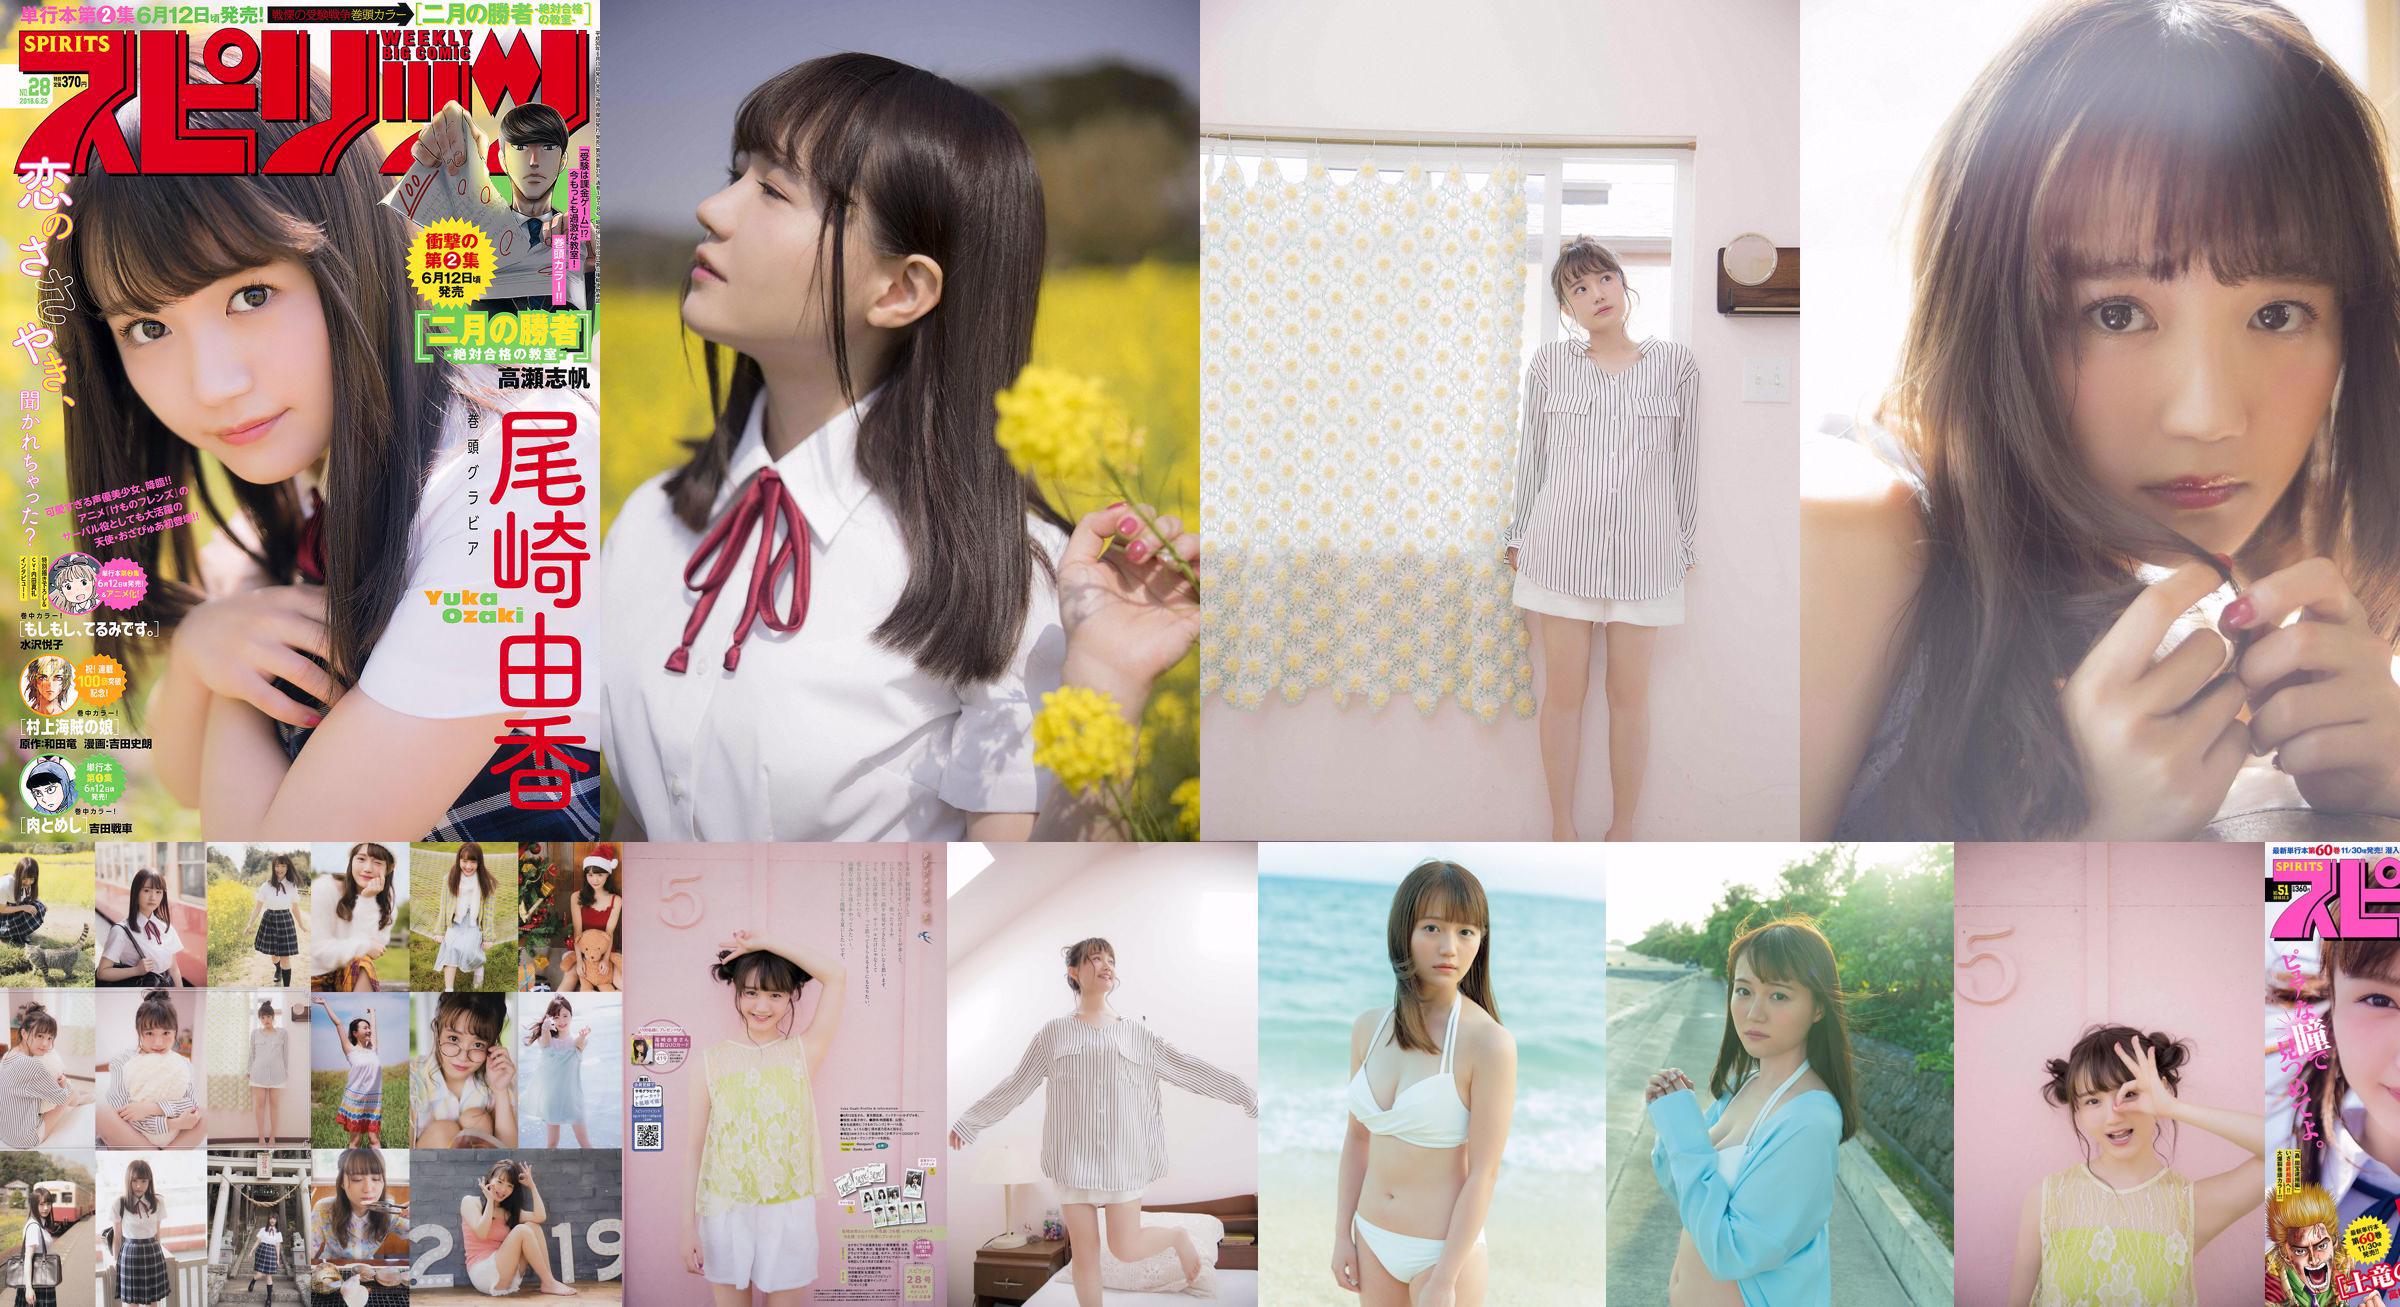 [Weekly Big Comic Spirits] Yuka Ozaki No.51 Photo Magazine in 2018 No.58e80a Pagina 3